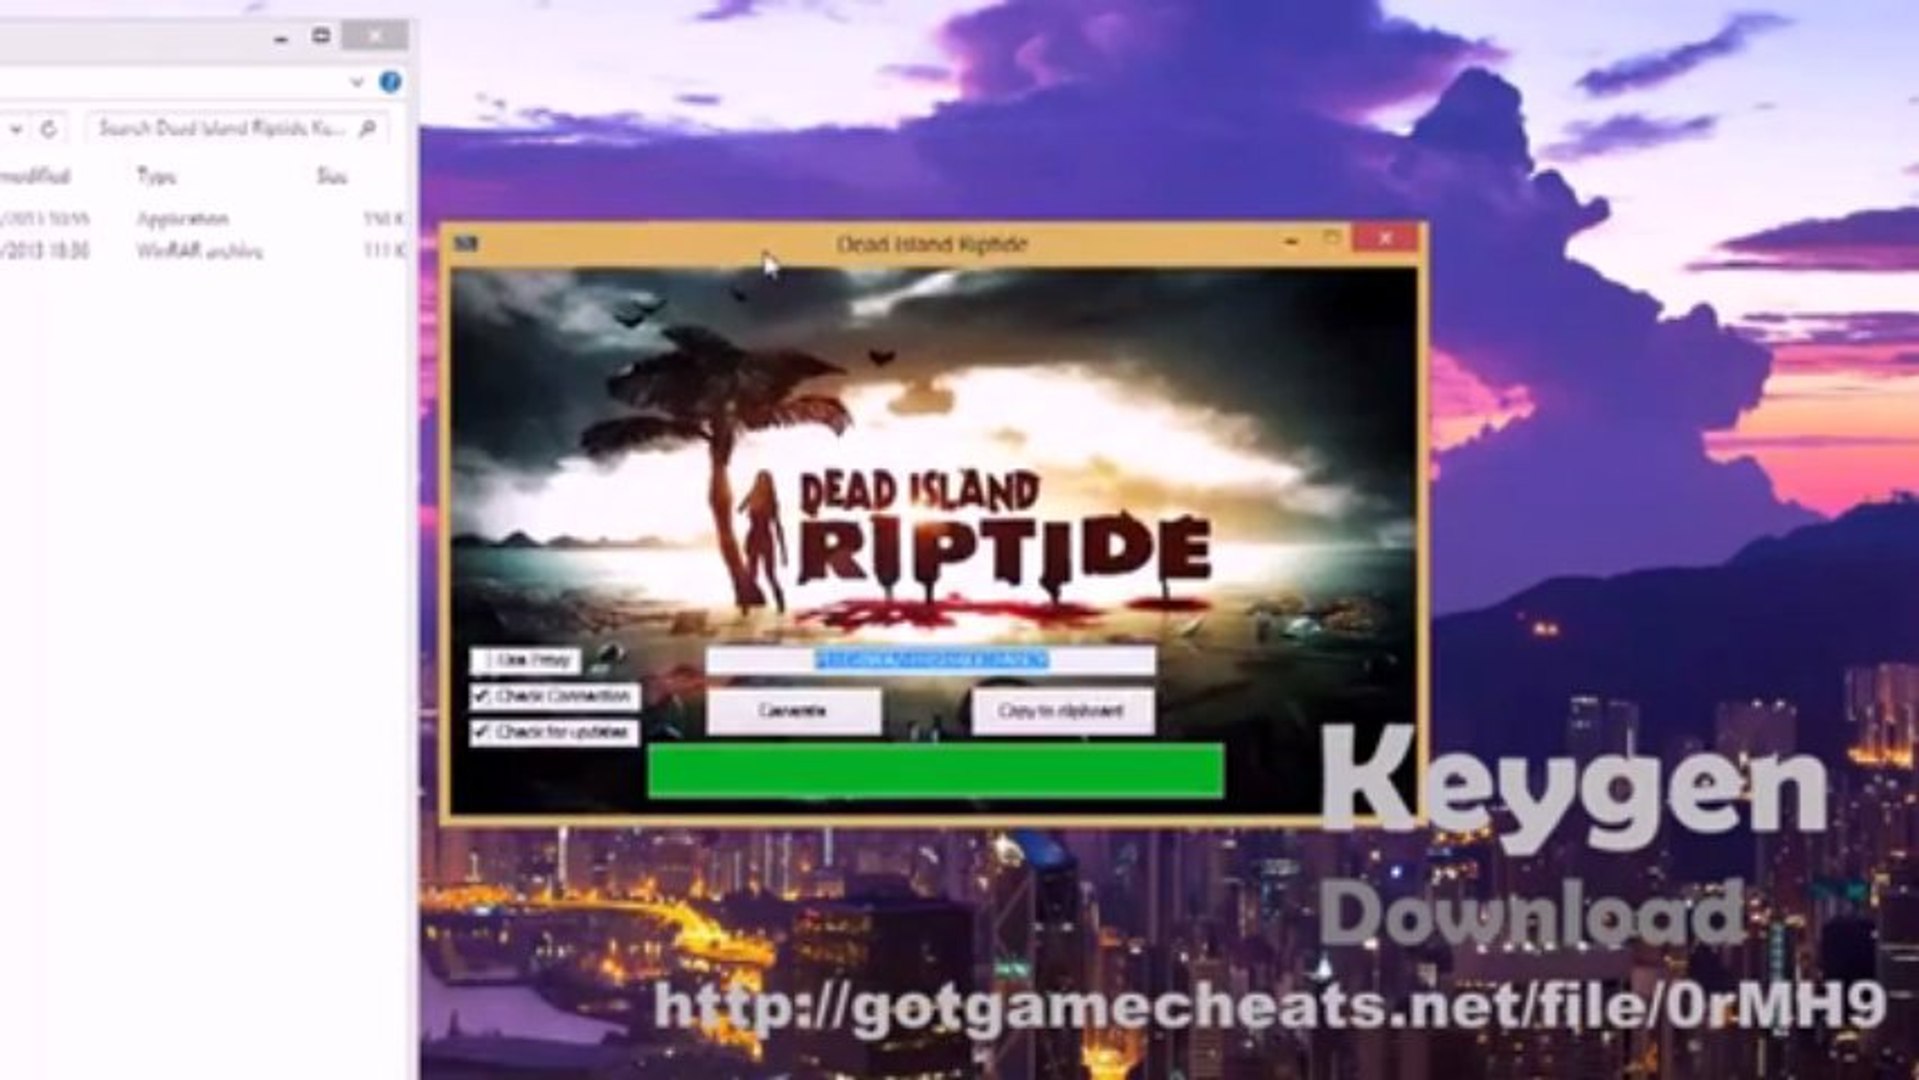 Dead Island - Riptide Key Code Generator - keygen (CD Key) PC, PS3, Xbox  360 - video Dailymotion